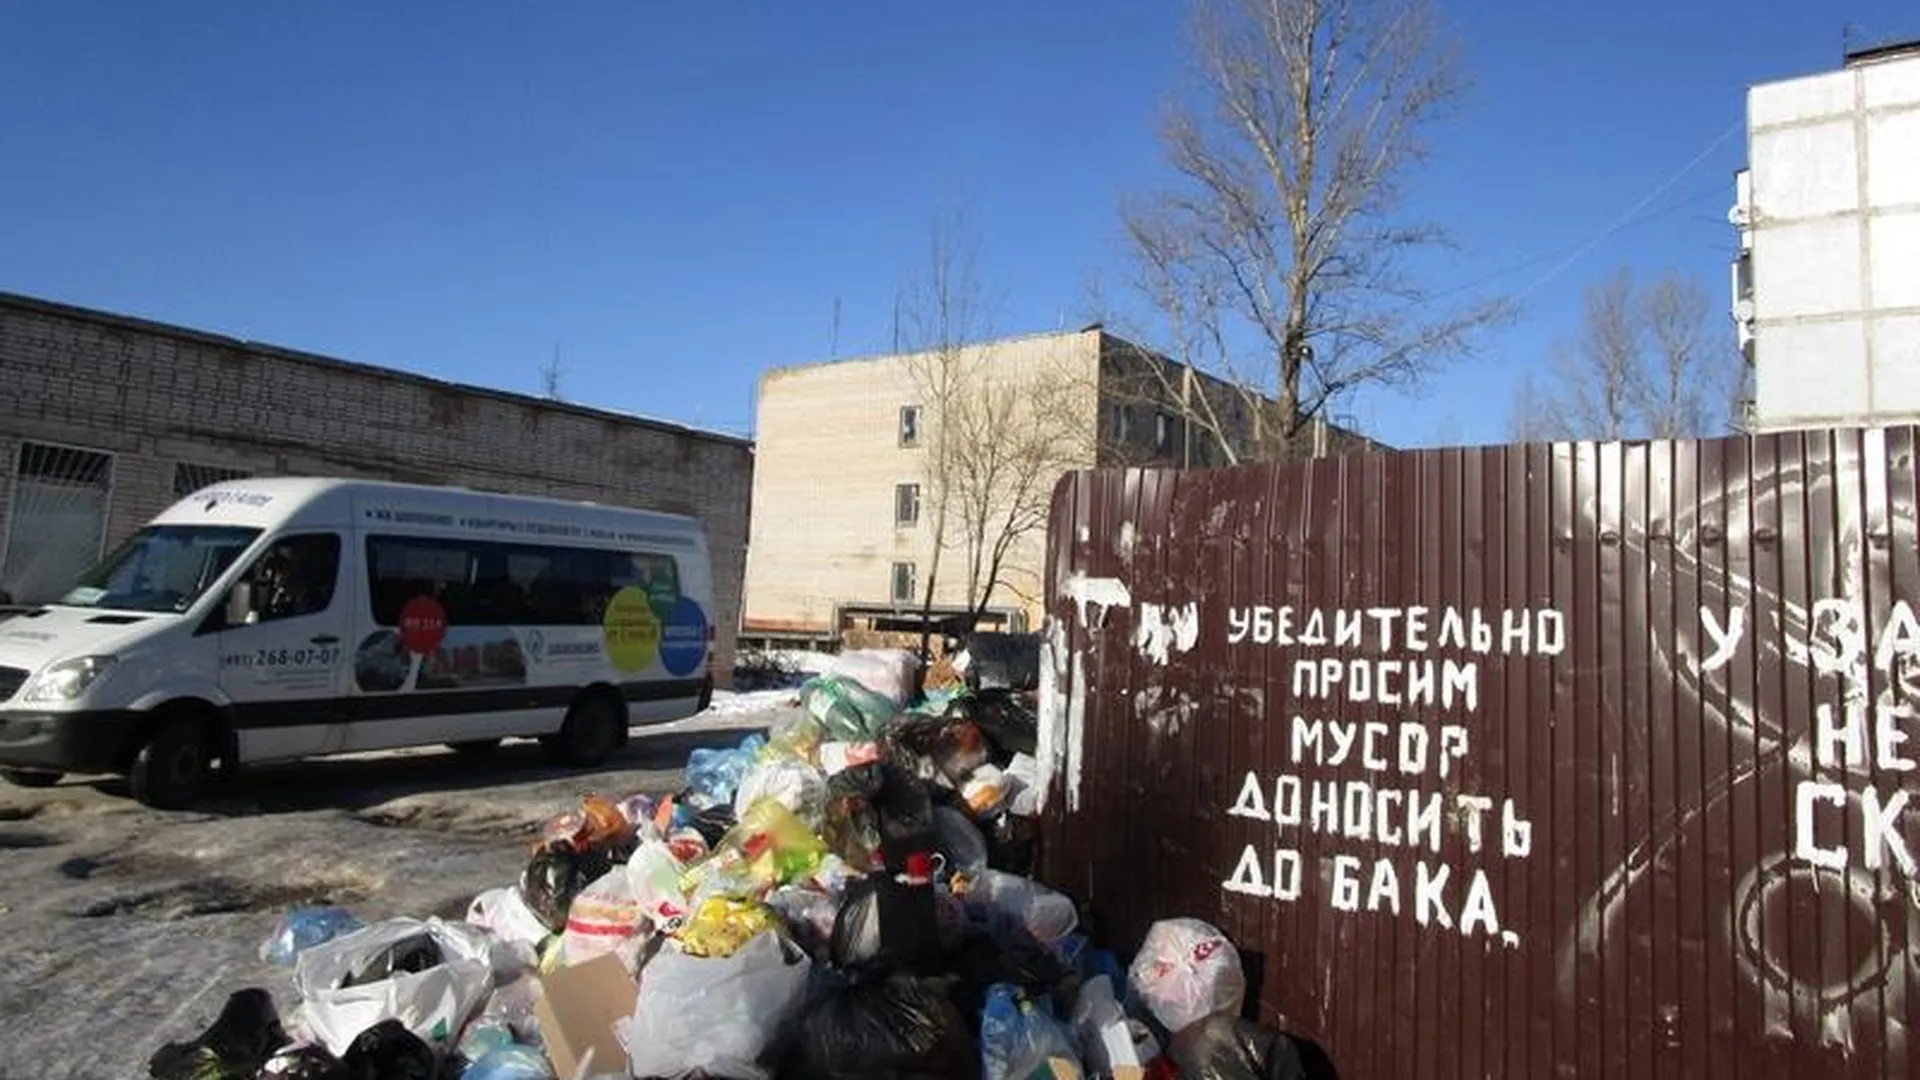 УК, обслуживающую военные городки, оштрафовали на 150 тыс в Дмитровском районе